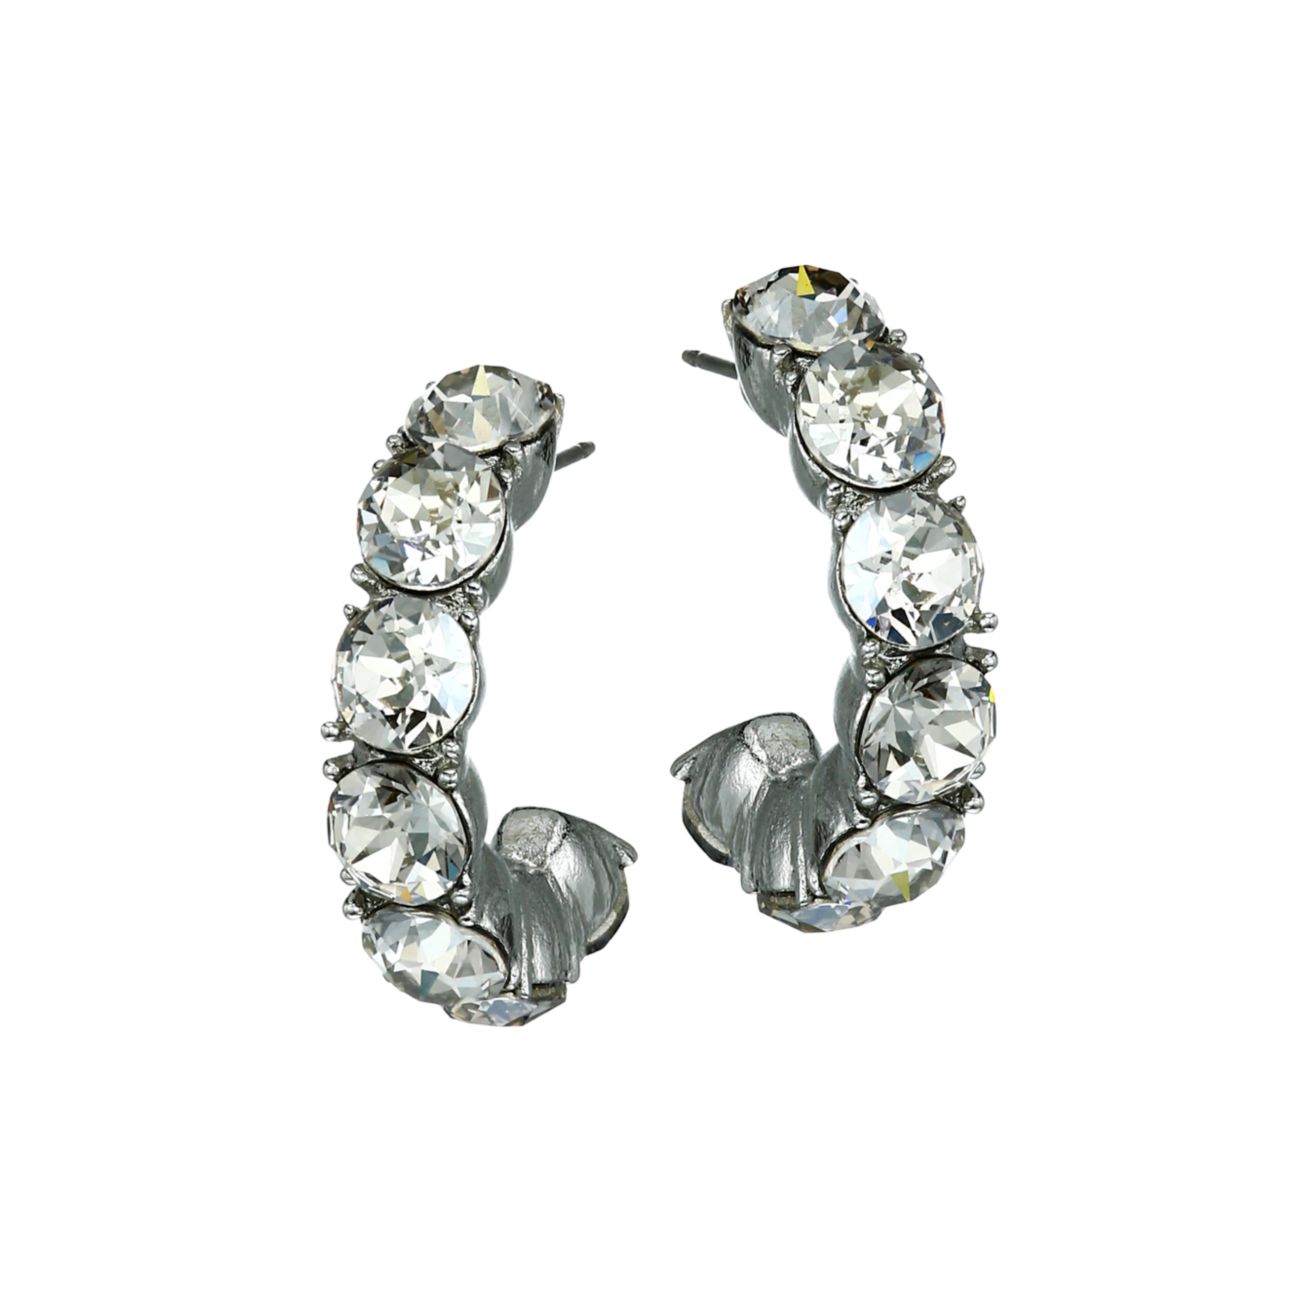 Silvertone & amp; Маленькие серьги-кольца с кристаллами Oscar de la Renta